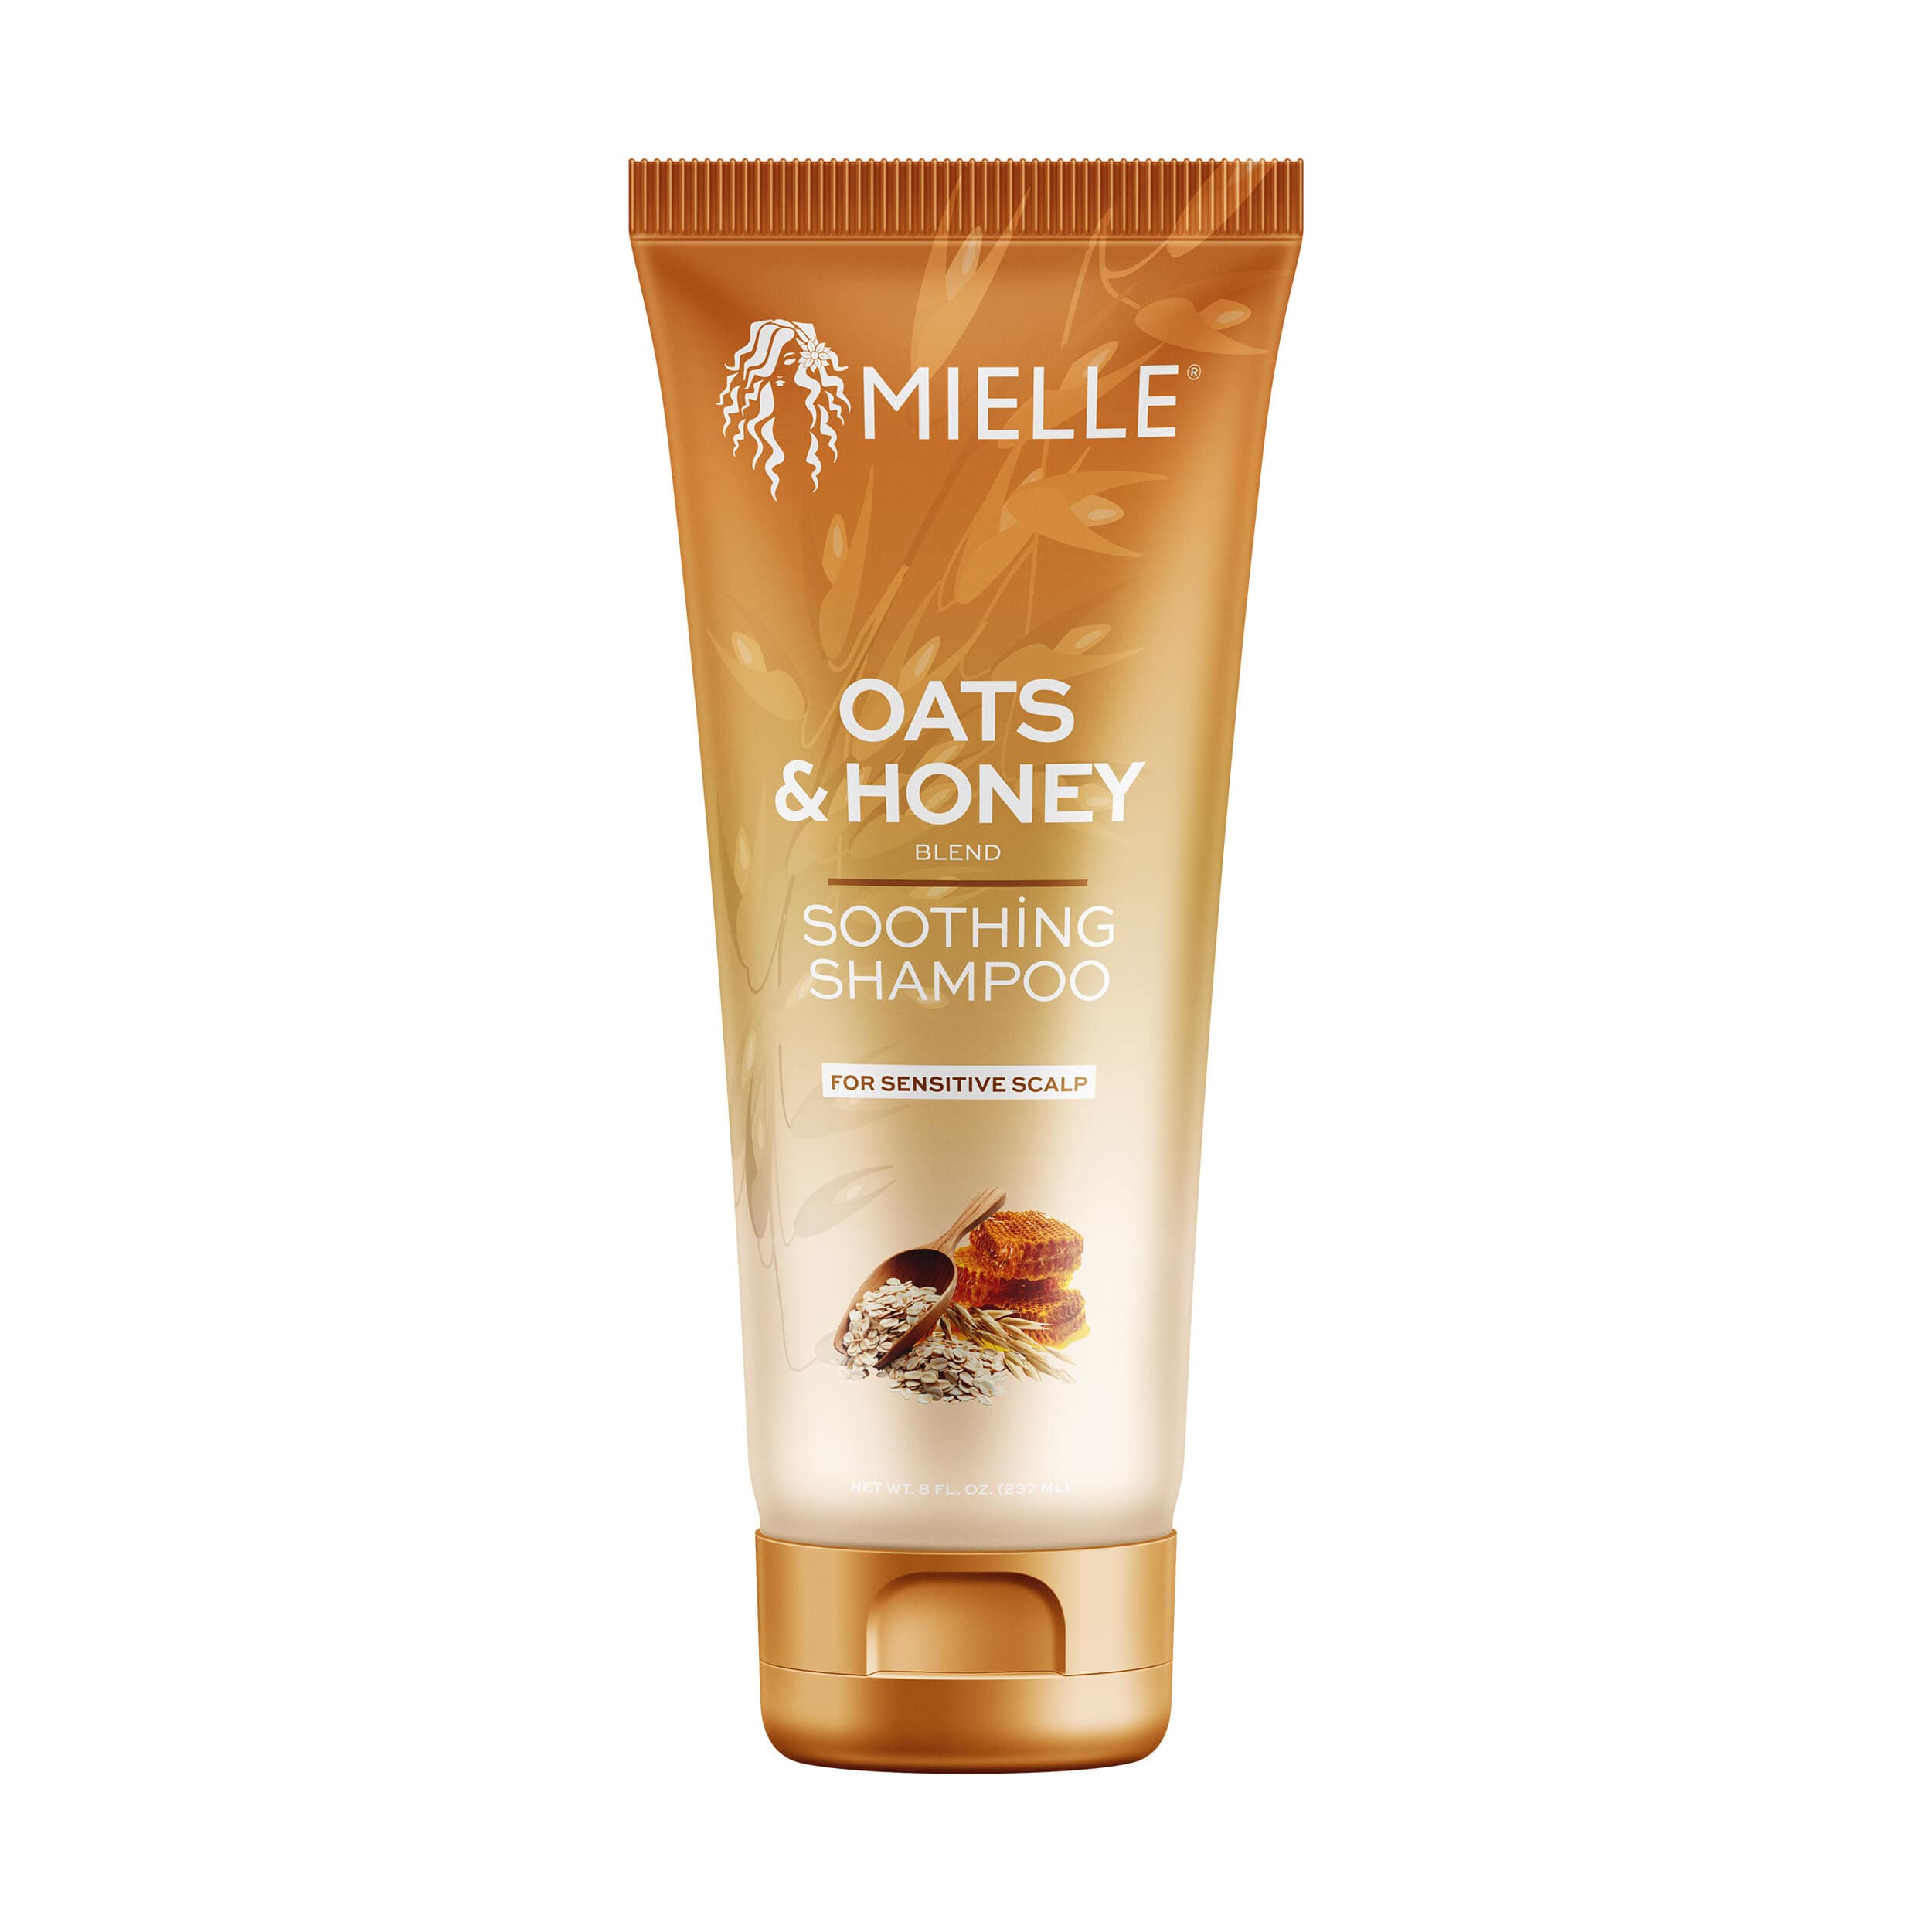 Mielle Oats & Honey Shampoo